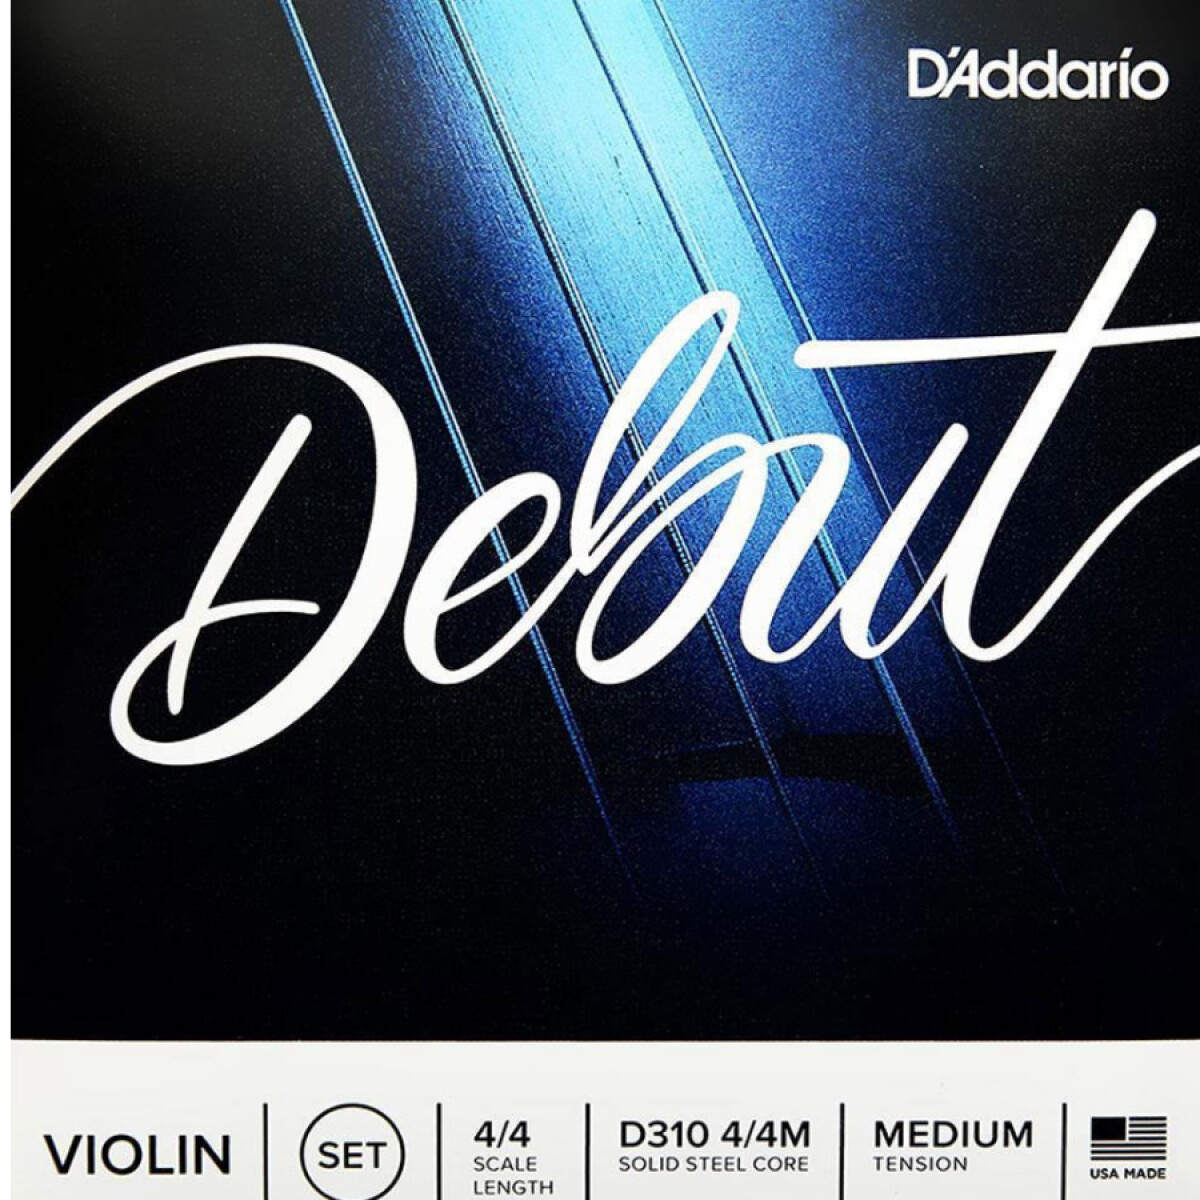 Set de Cuerdas para Violín D'Addario Debut D310 4/4M 